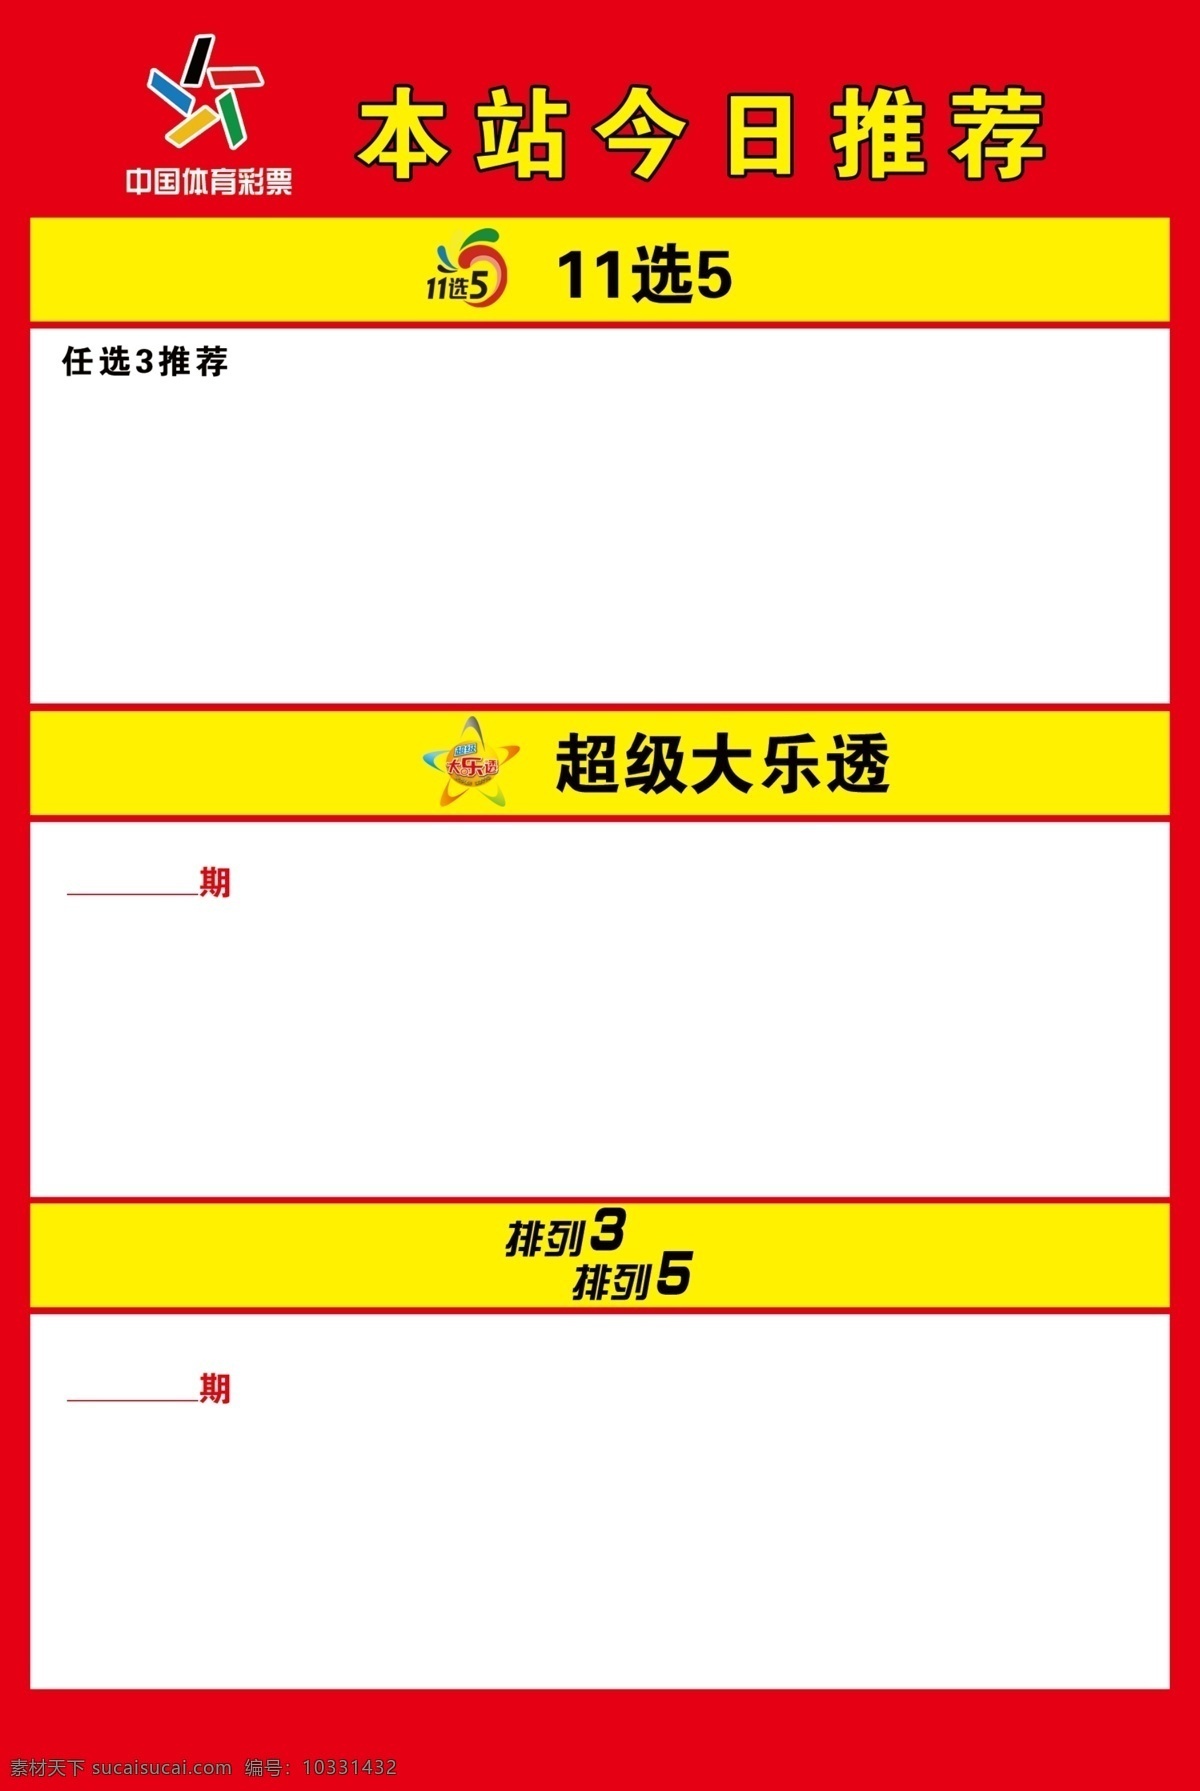 中国体育彩票 体彩 今日推荐号码 11选5 排列三排列五 超级大乐透 矢量 ps 分层